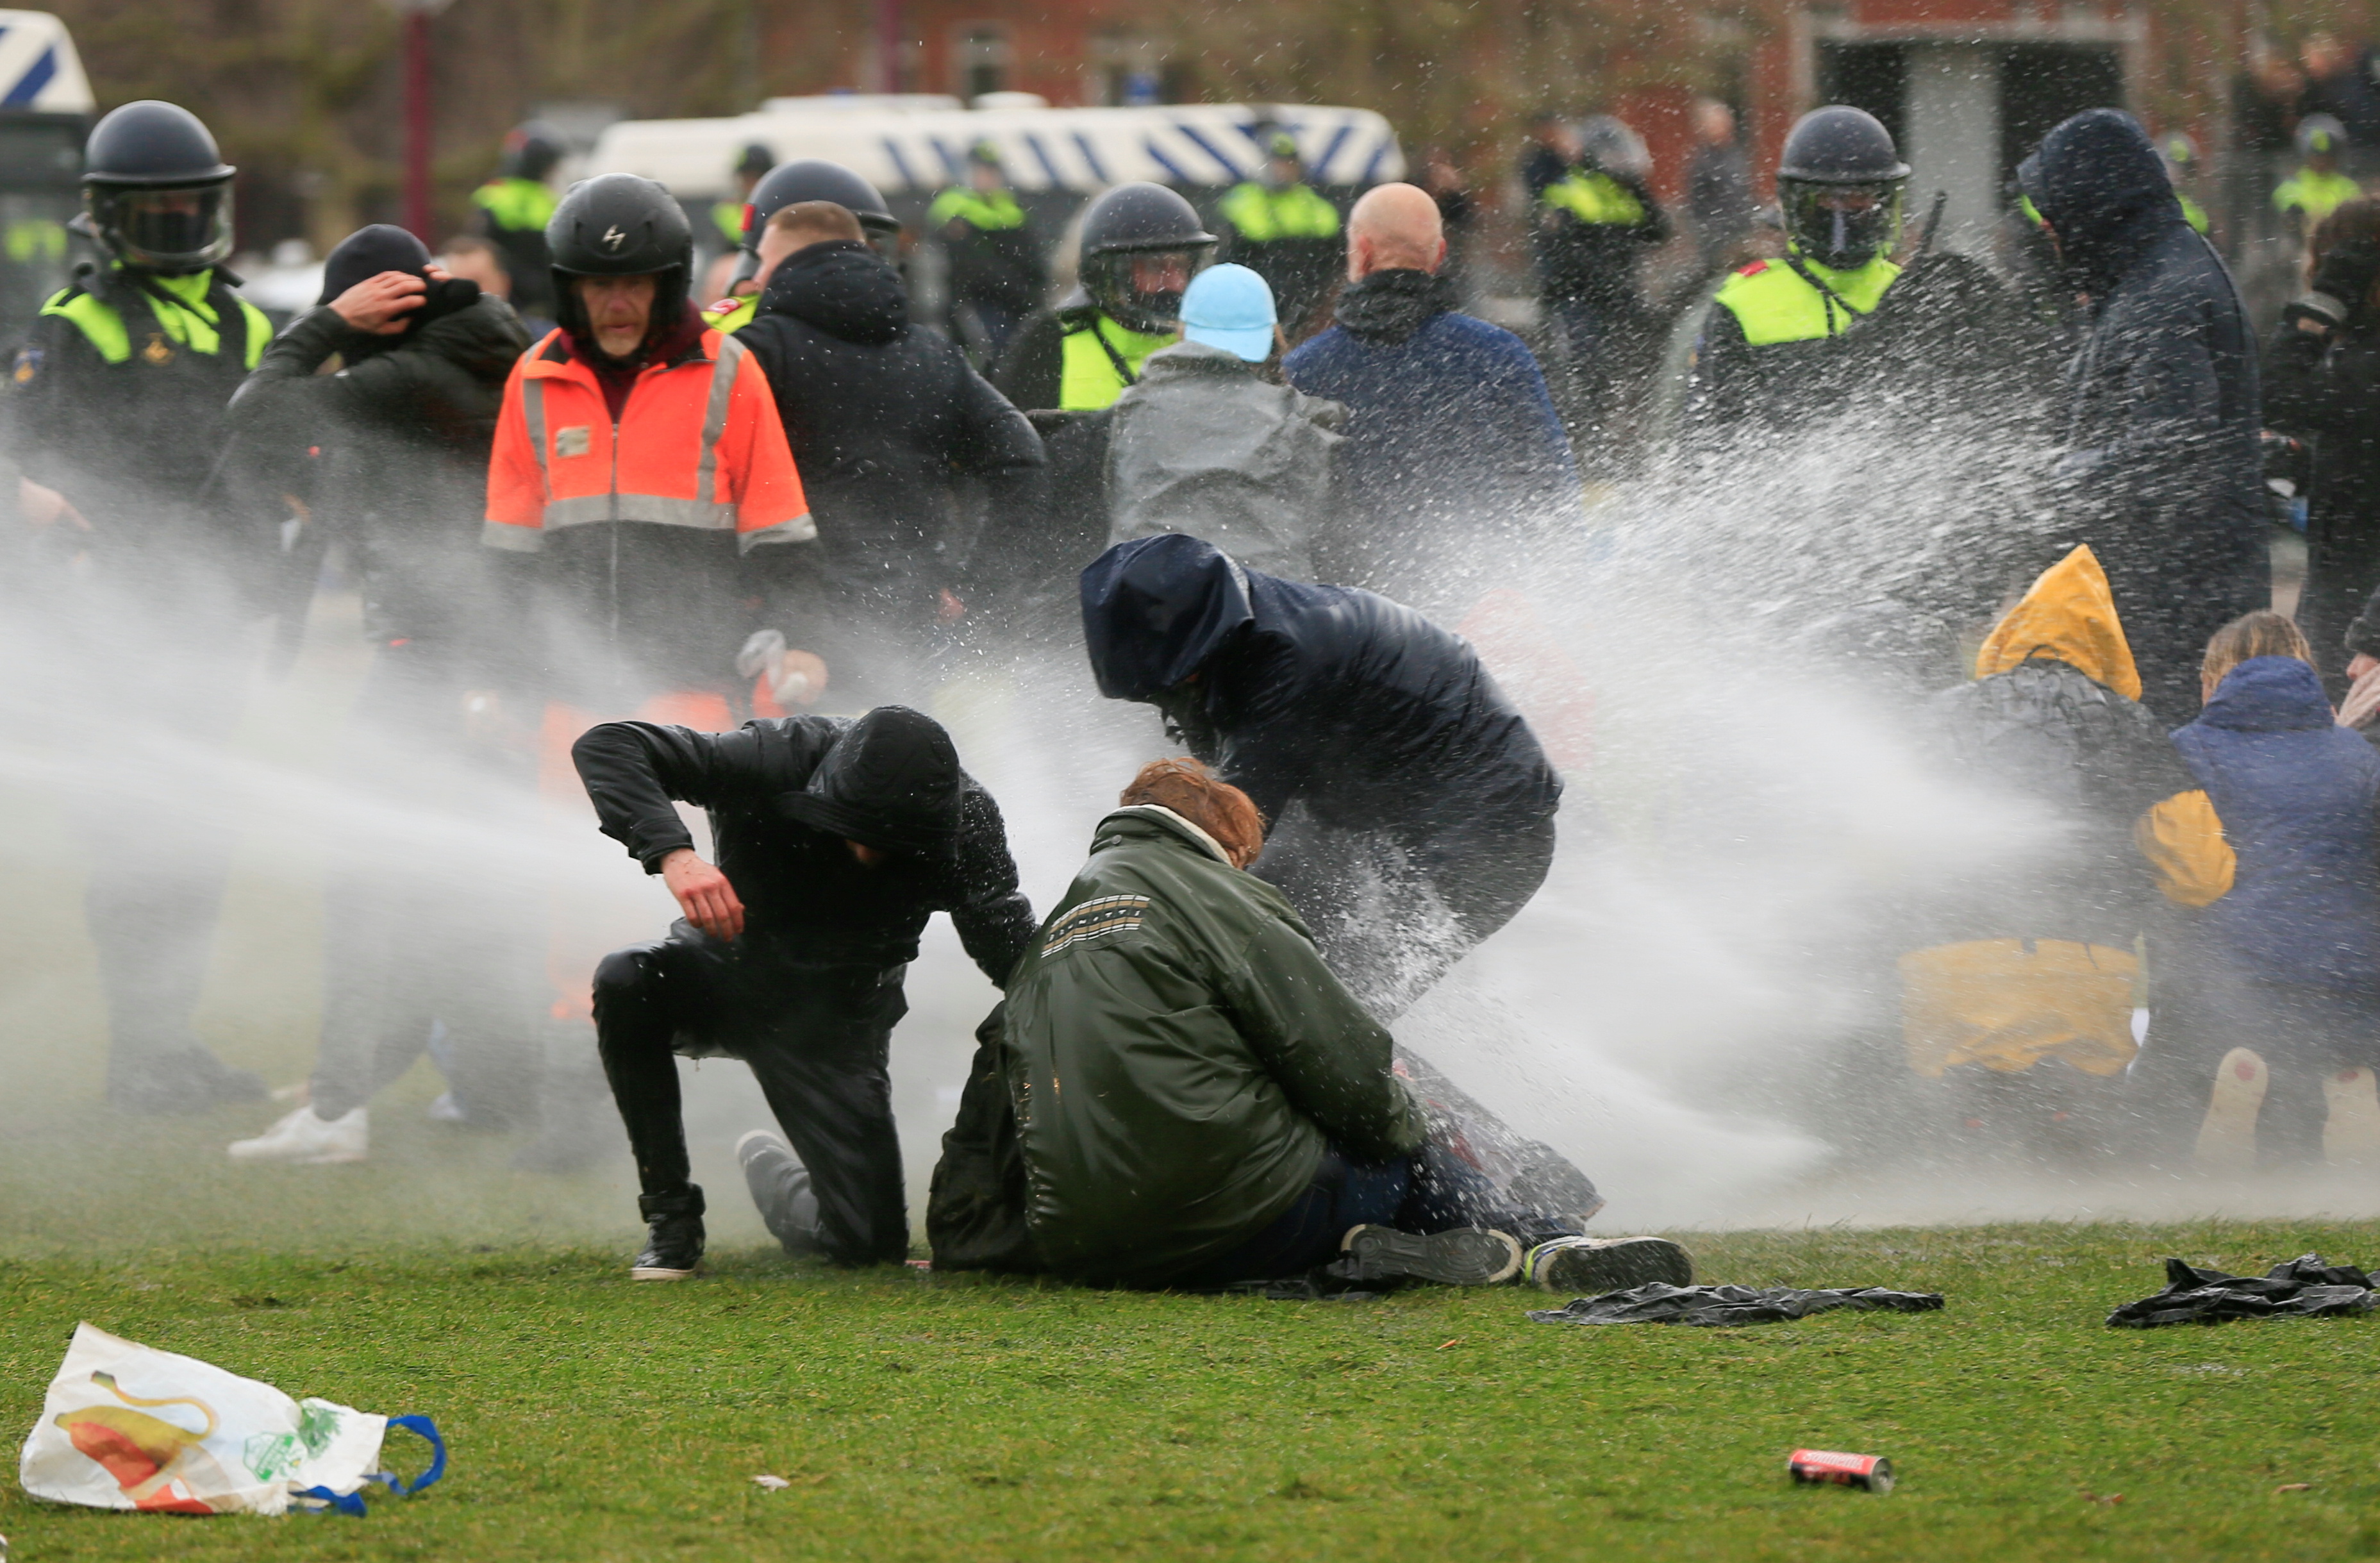 La policía utiliza un cañón de agua durante una protesta contra las restricciones impuestas para frenar la propagación de la enfermedad del coronavirus (COVID-19), en Ámsterdam, Países Bajos. REUTERS/Eva Plevier